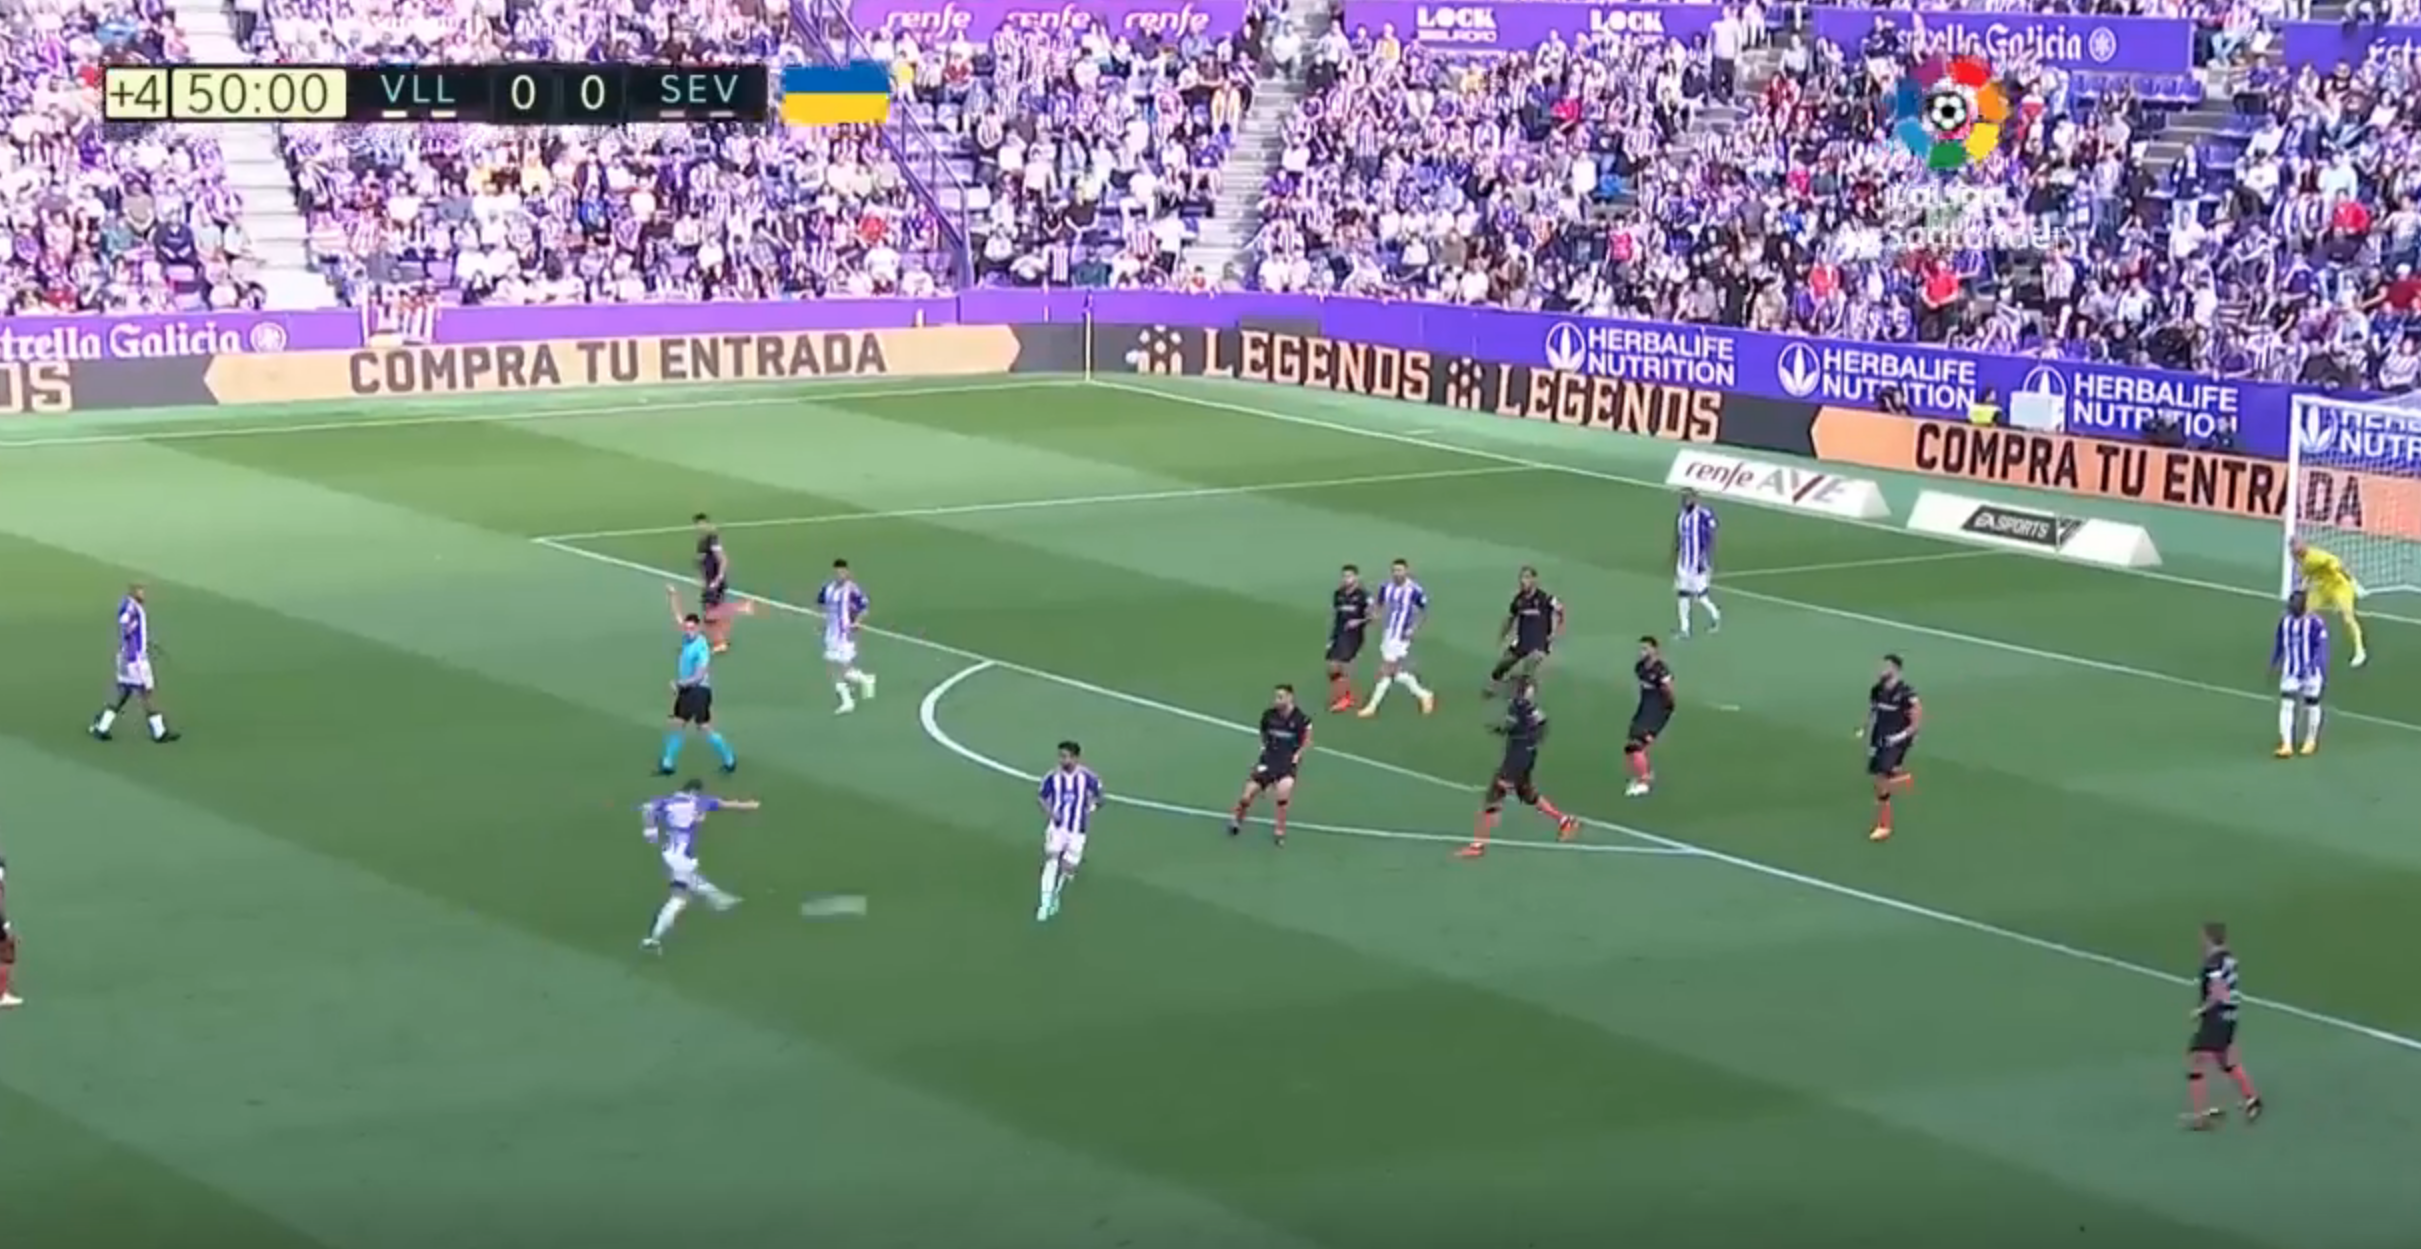 Incendio en Zorrilla: el árbitro anula un gol al Valladolid por haber pitado justo antes